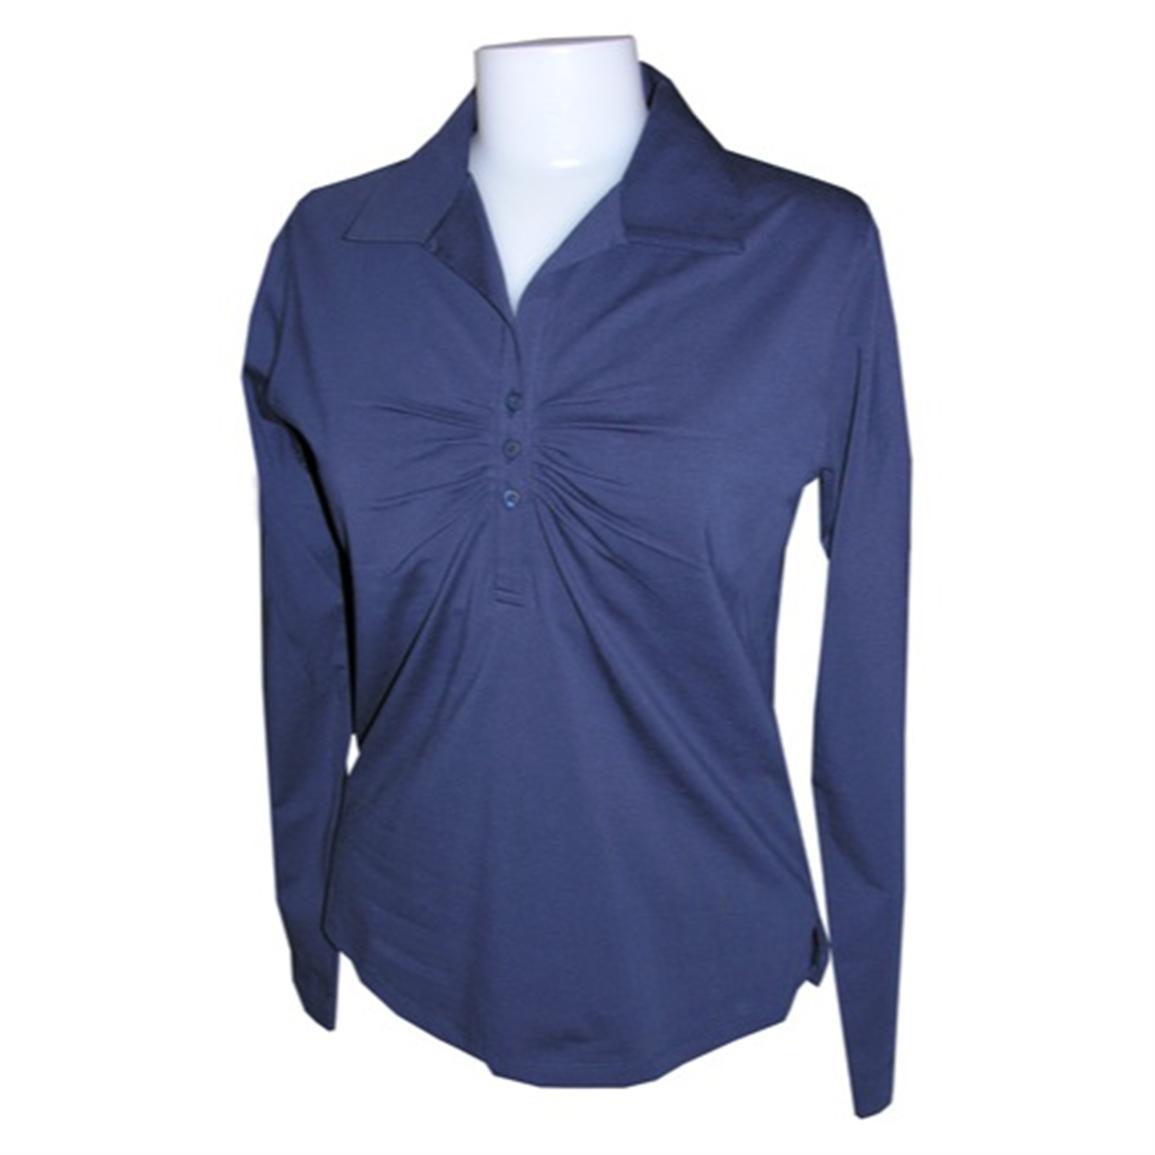 Women's Pima Stretch Jersey - knit Long - sleeve Top from Jockey ...